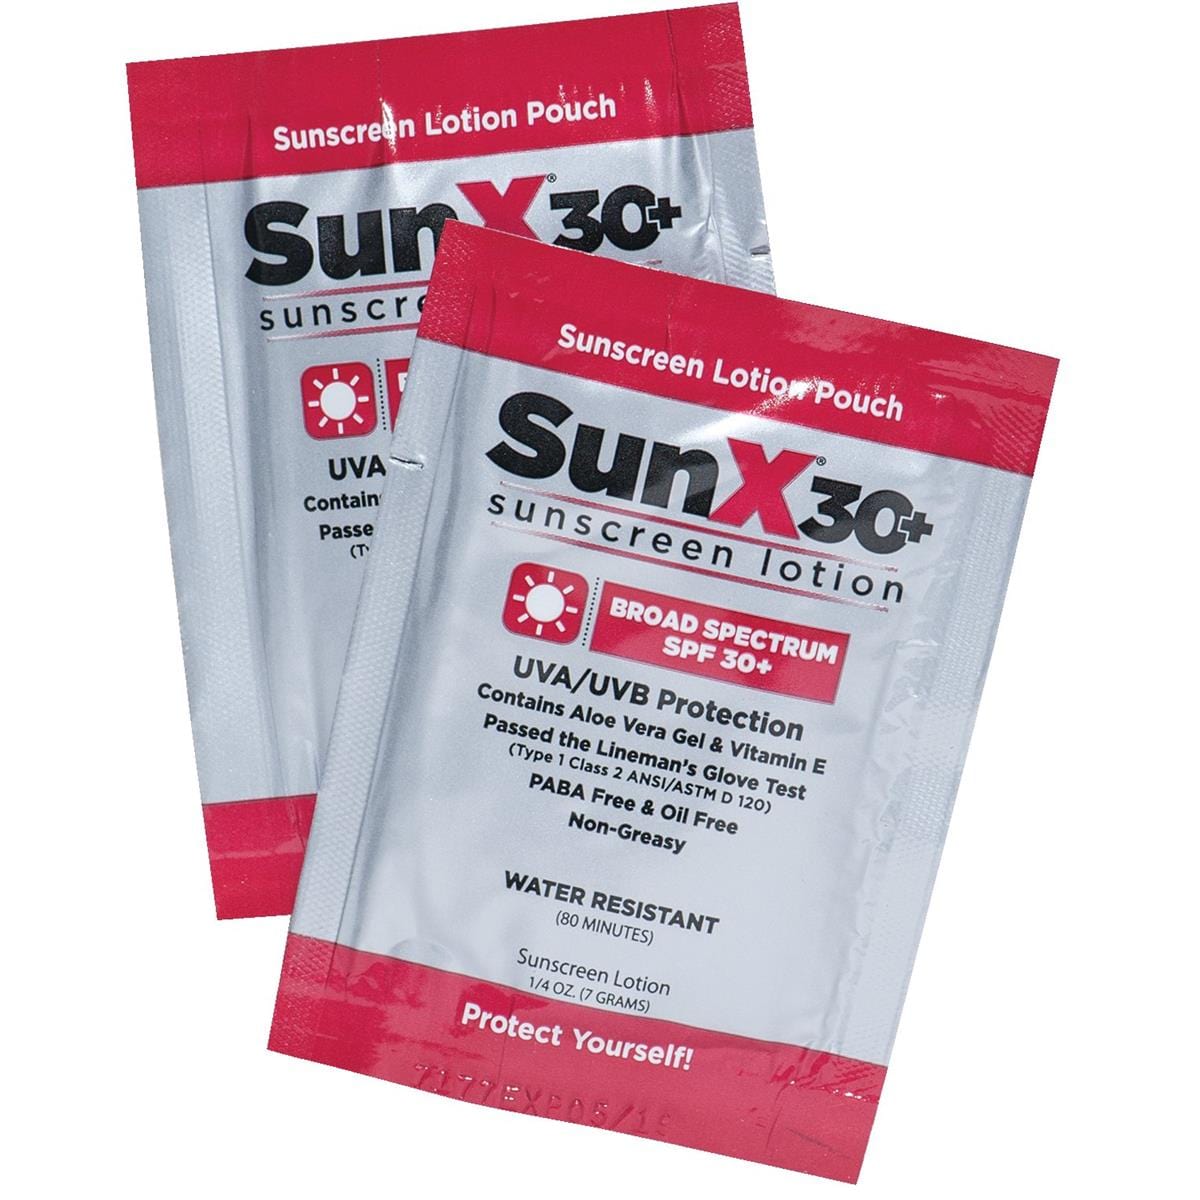 SunX Sunscreen